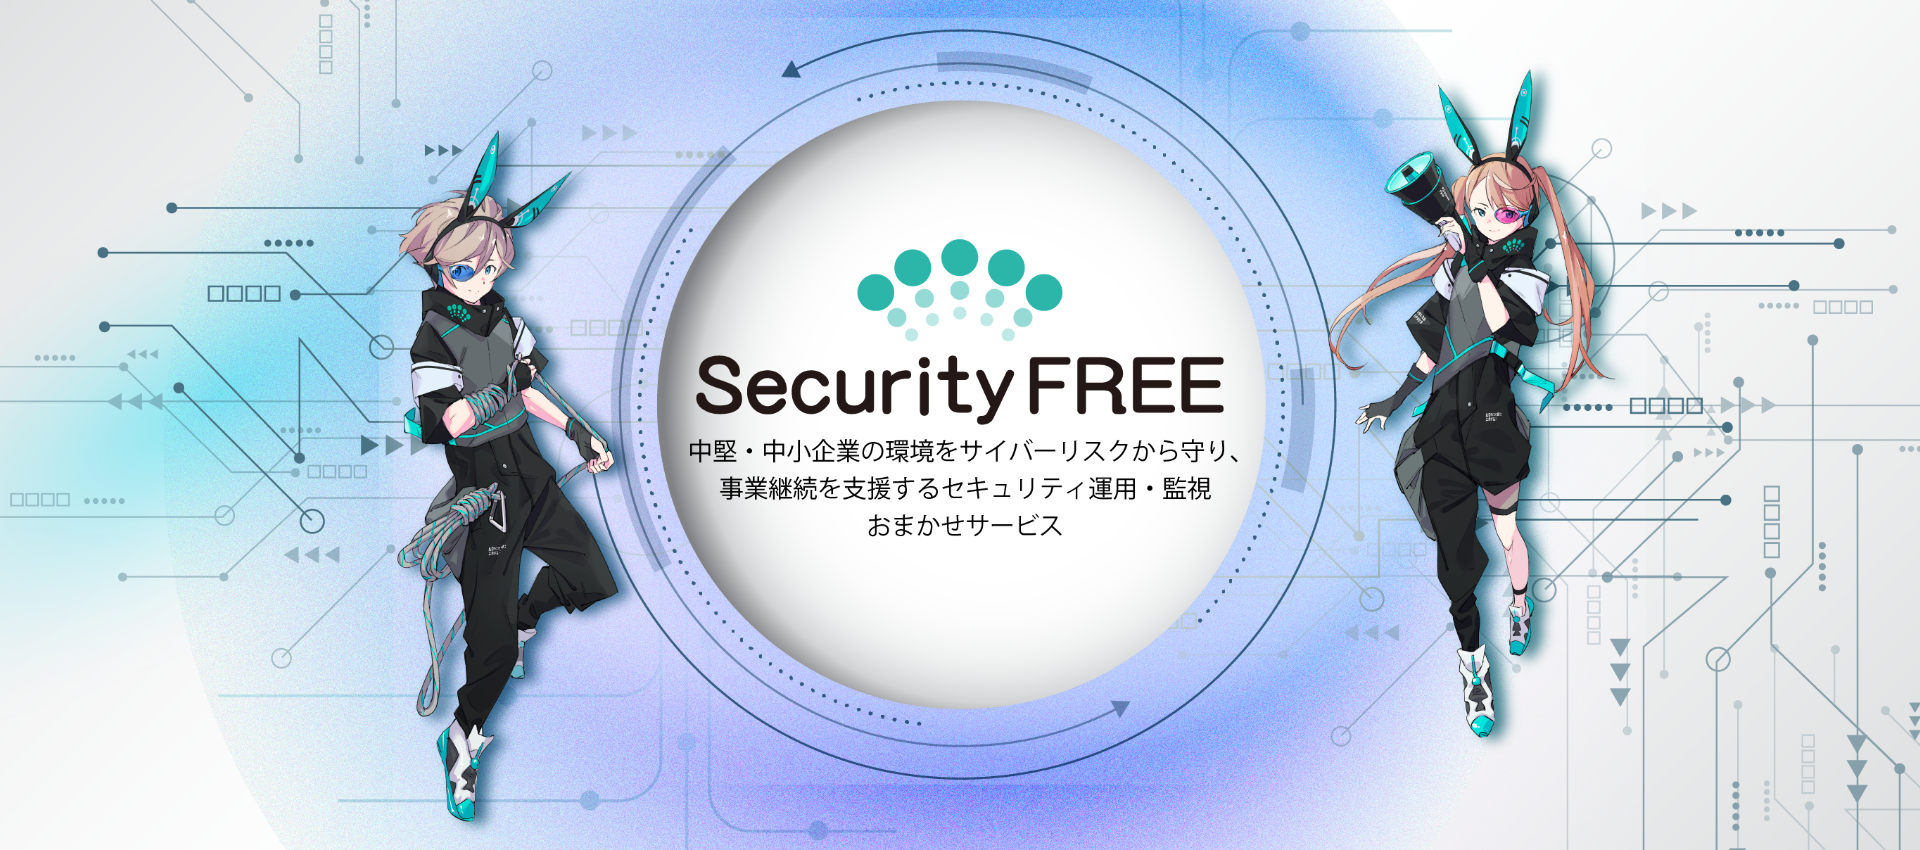 大企業レベルのセキュリティ運用を。Security FREE